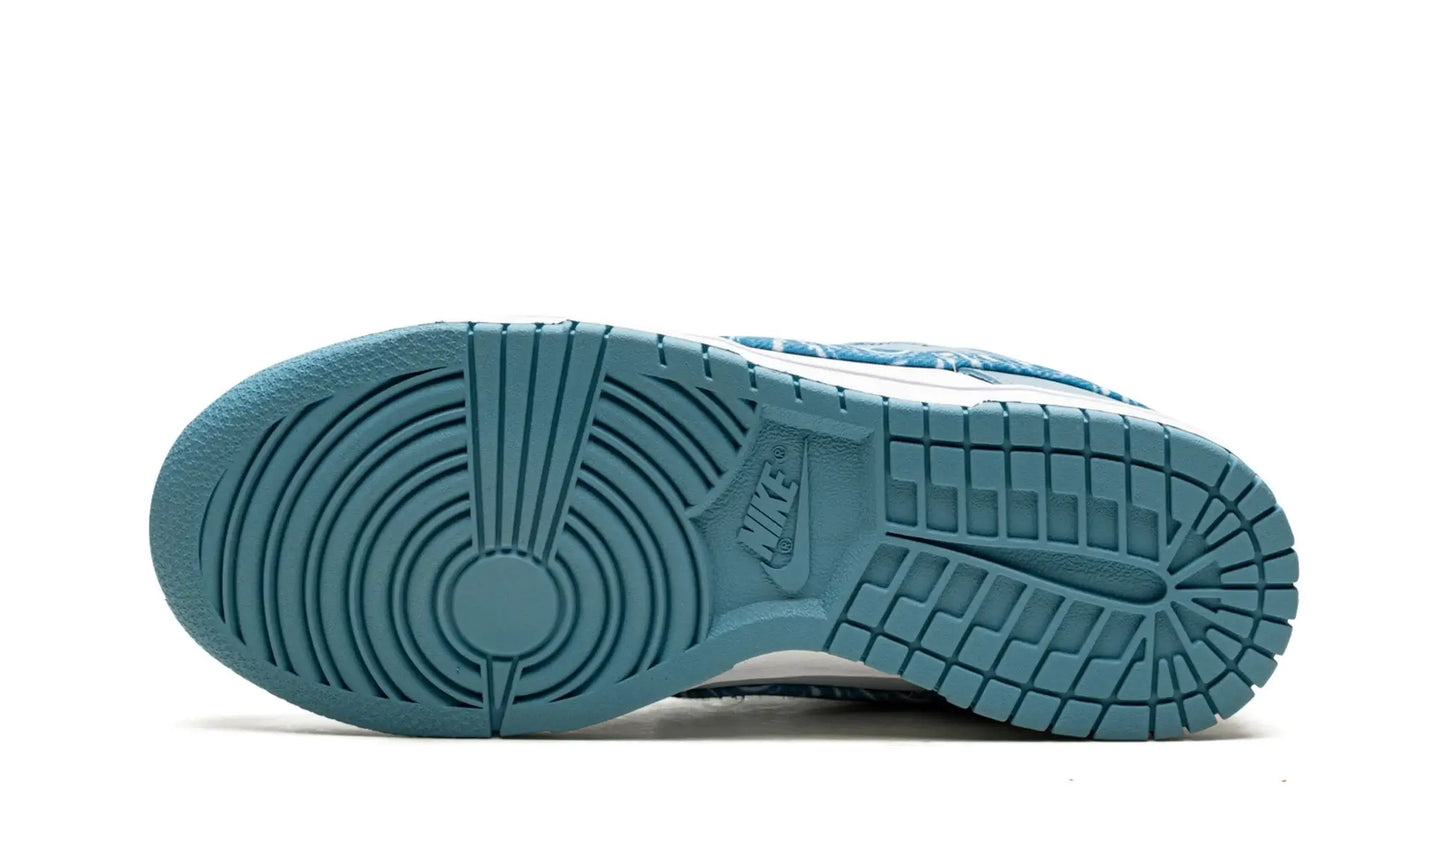 Tênis Nike Dunk Low Feminino "Blue Paisley" Azul / Branco